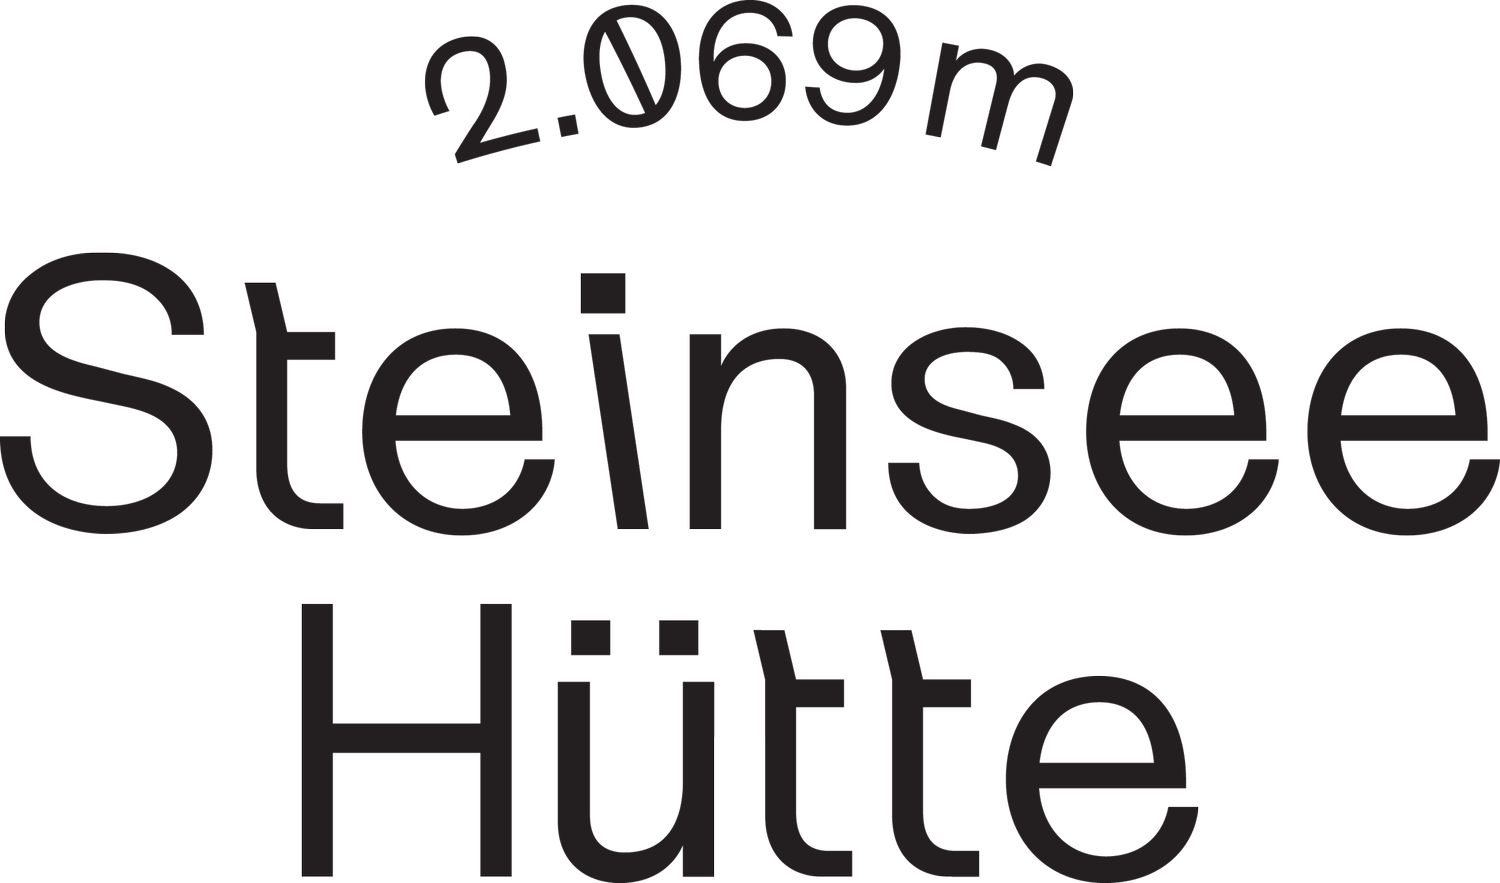 Steinseehuette